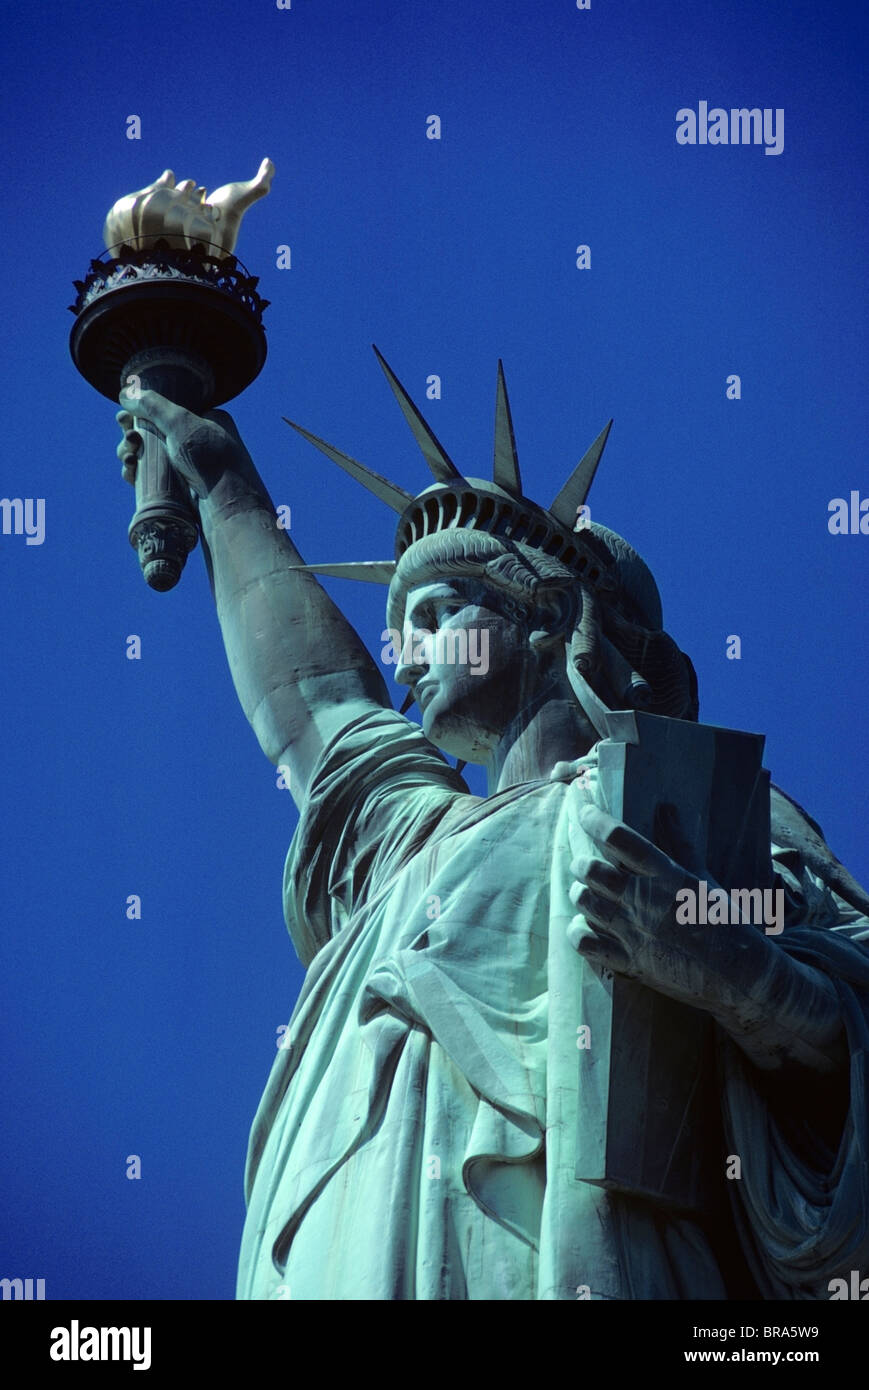 STATUE OF LIBERTY NEW YORK NY Stock Photo